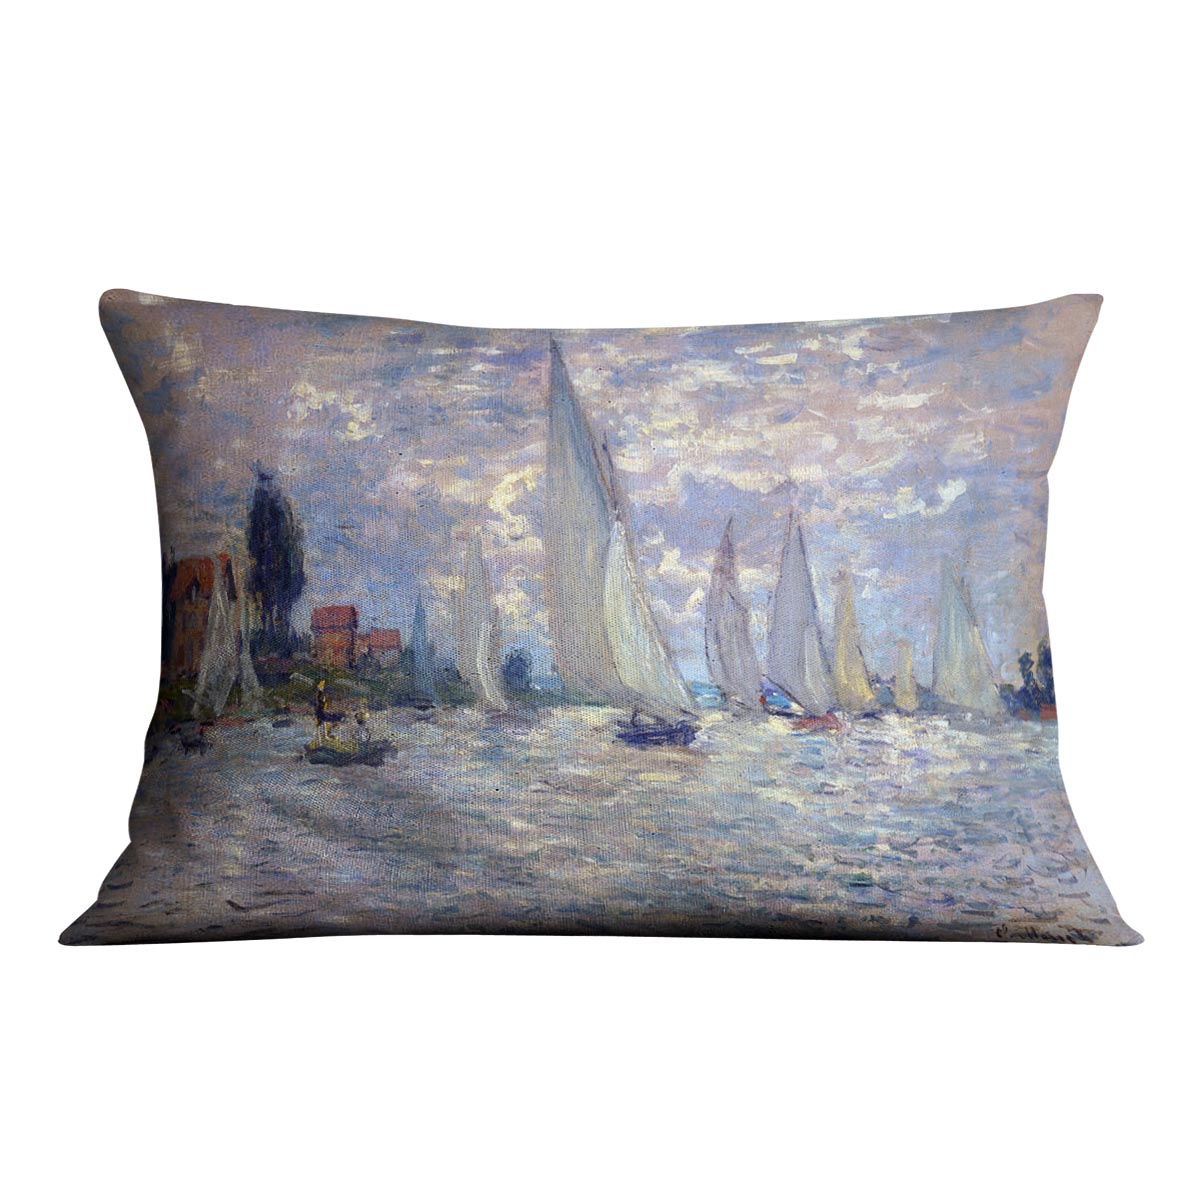 Les Barques by Monet Cushion